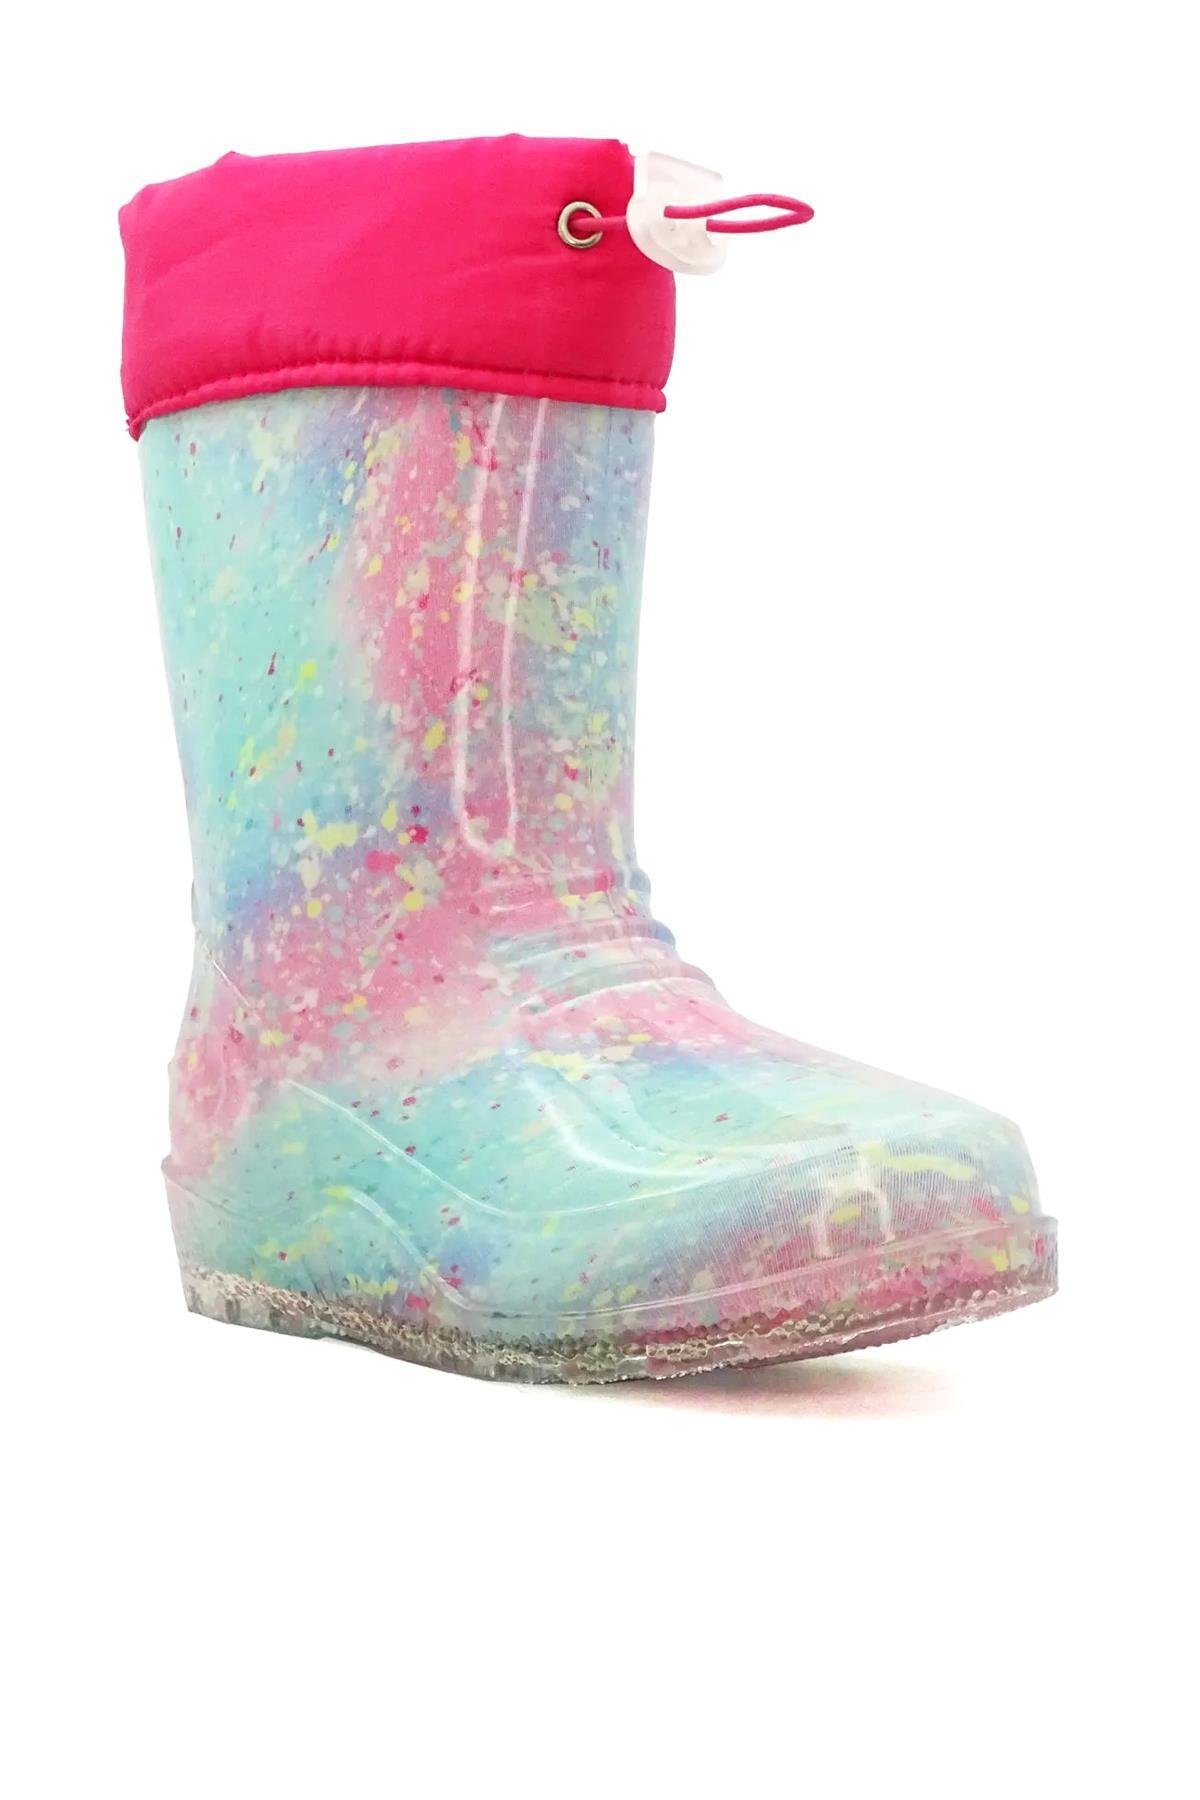 Green Pink Girls Rain High Boots